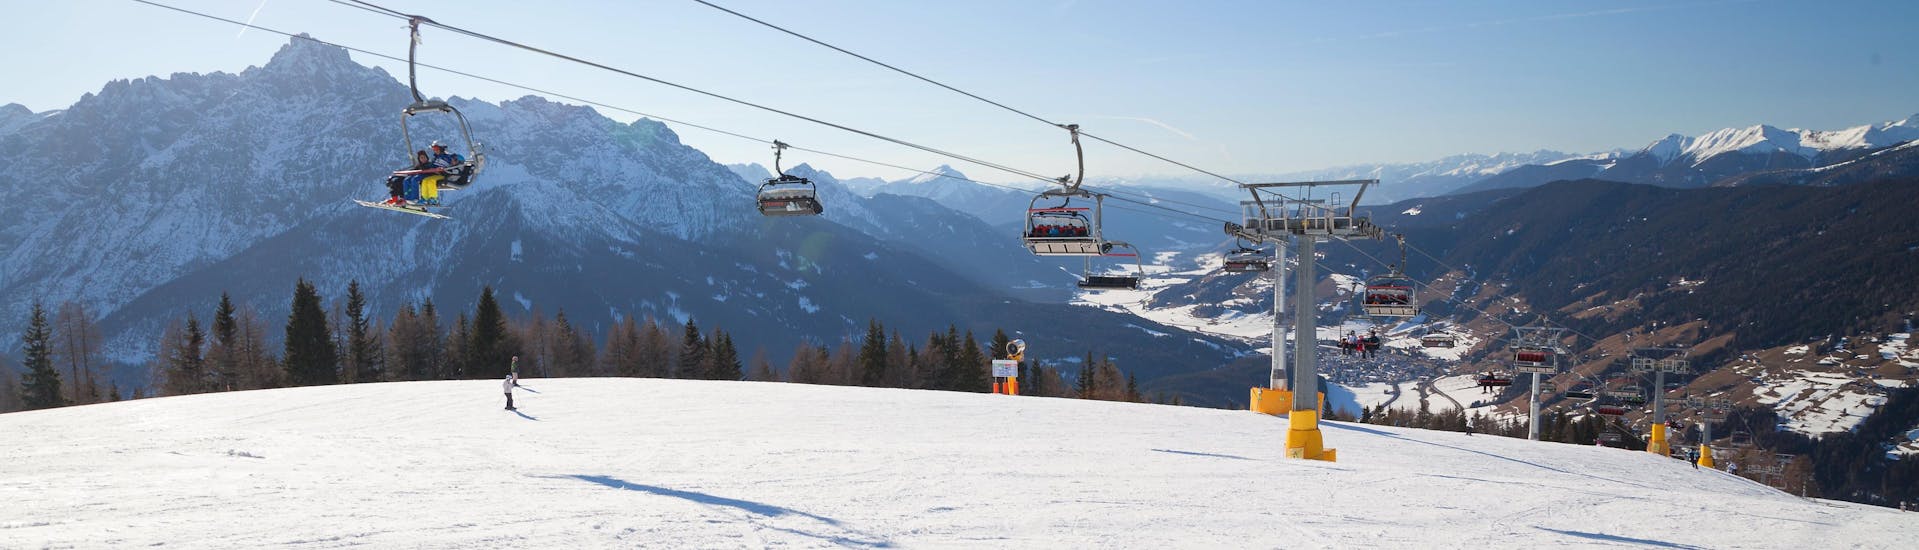 Skilift op de pistes van San Vito di Cadore waar u skilessen kunt krijgen.